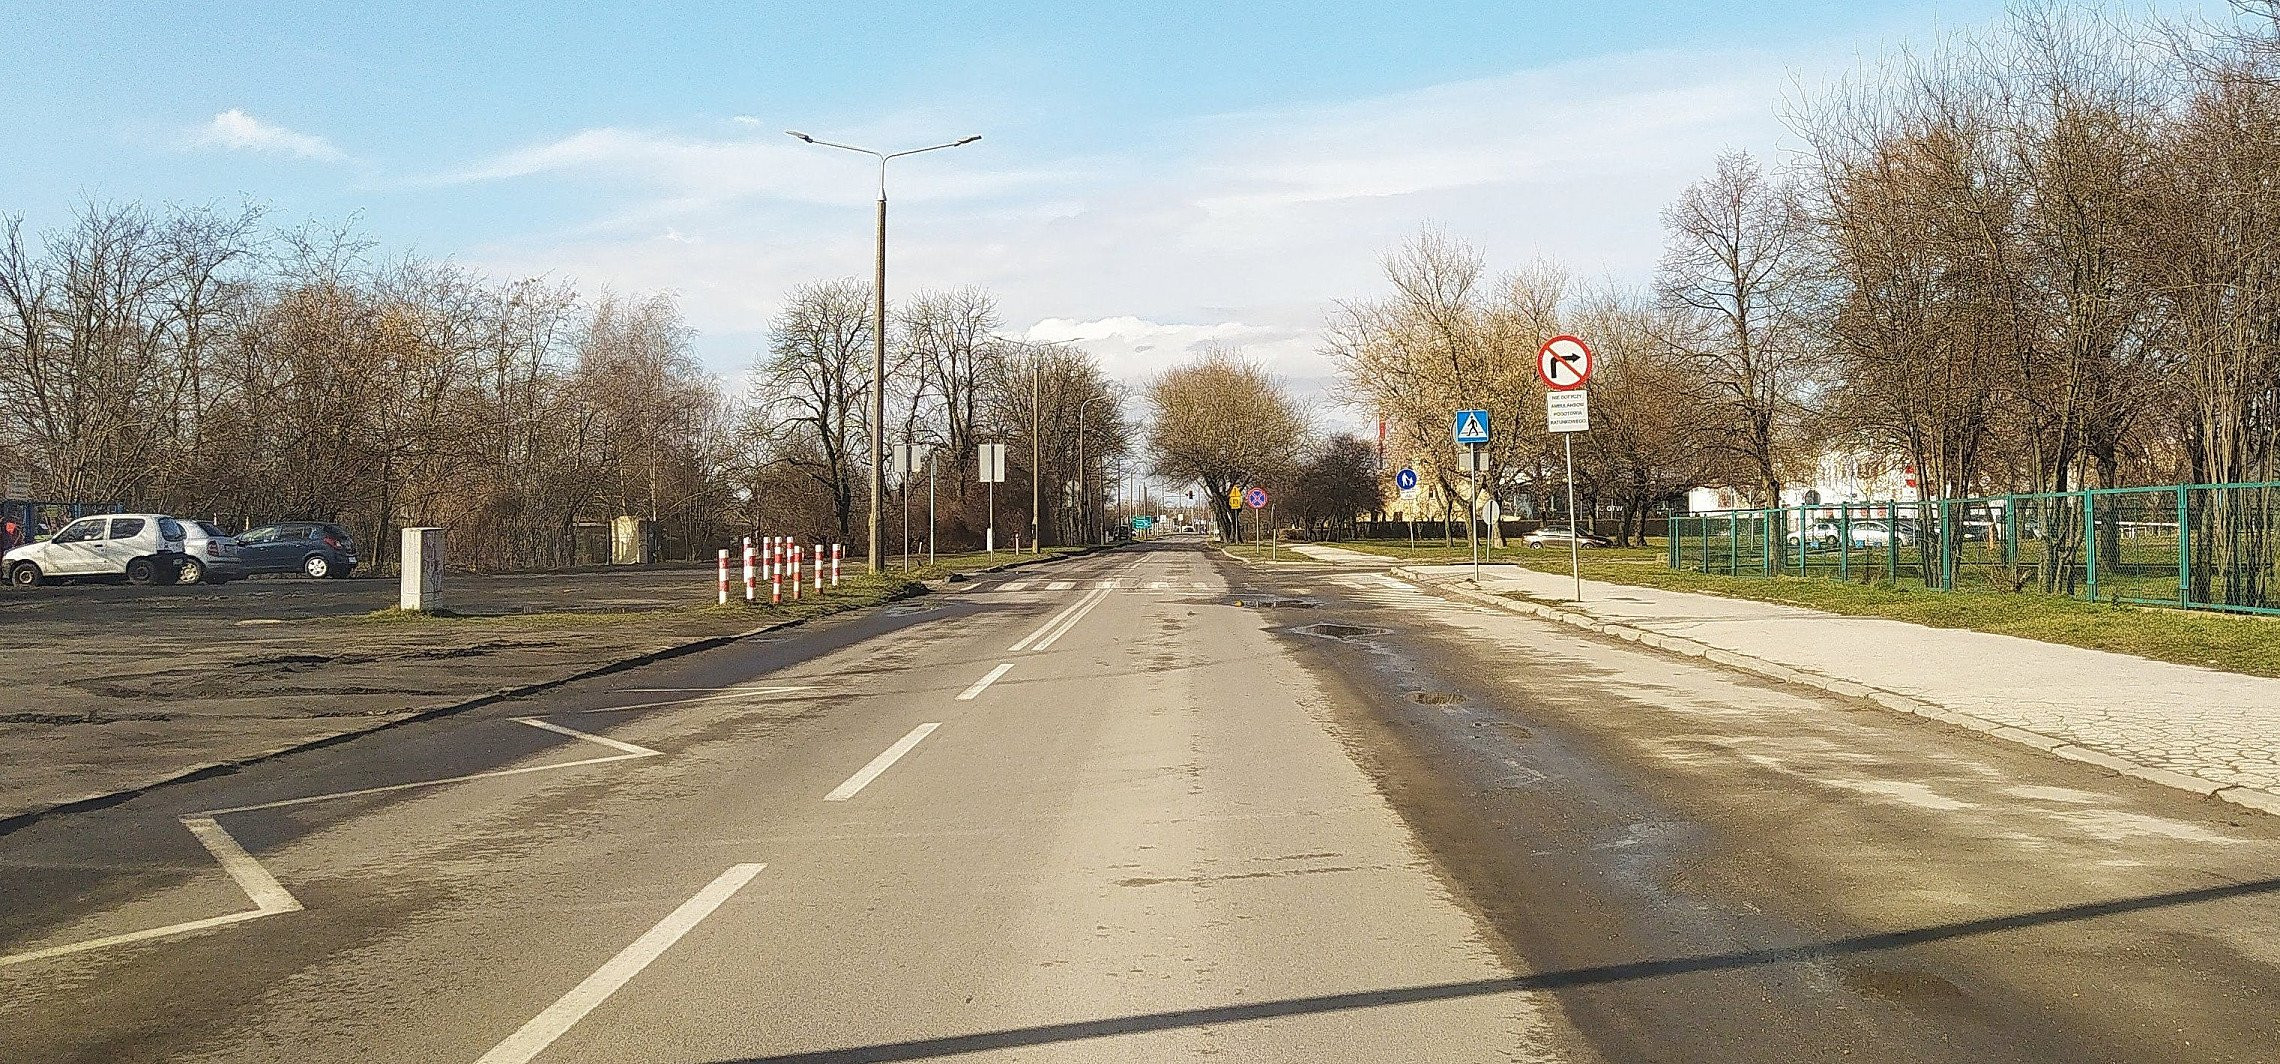 Inowrocław - Wczoraj miasto przejęło część powiatowych dróg